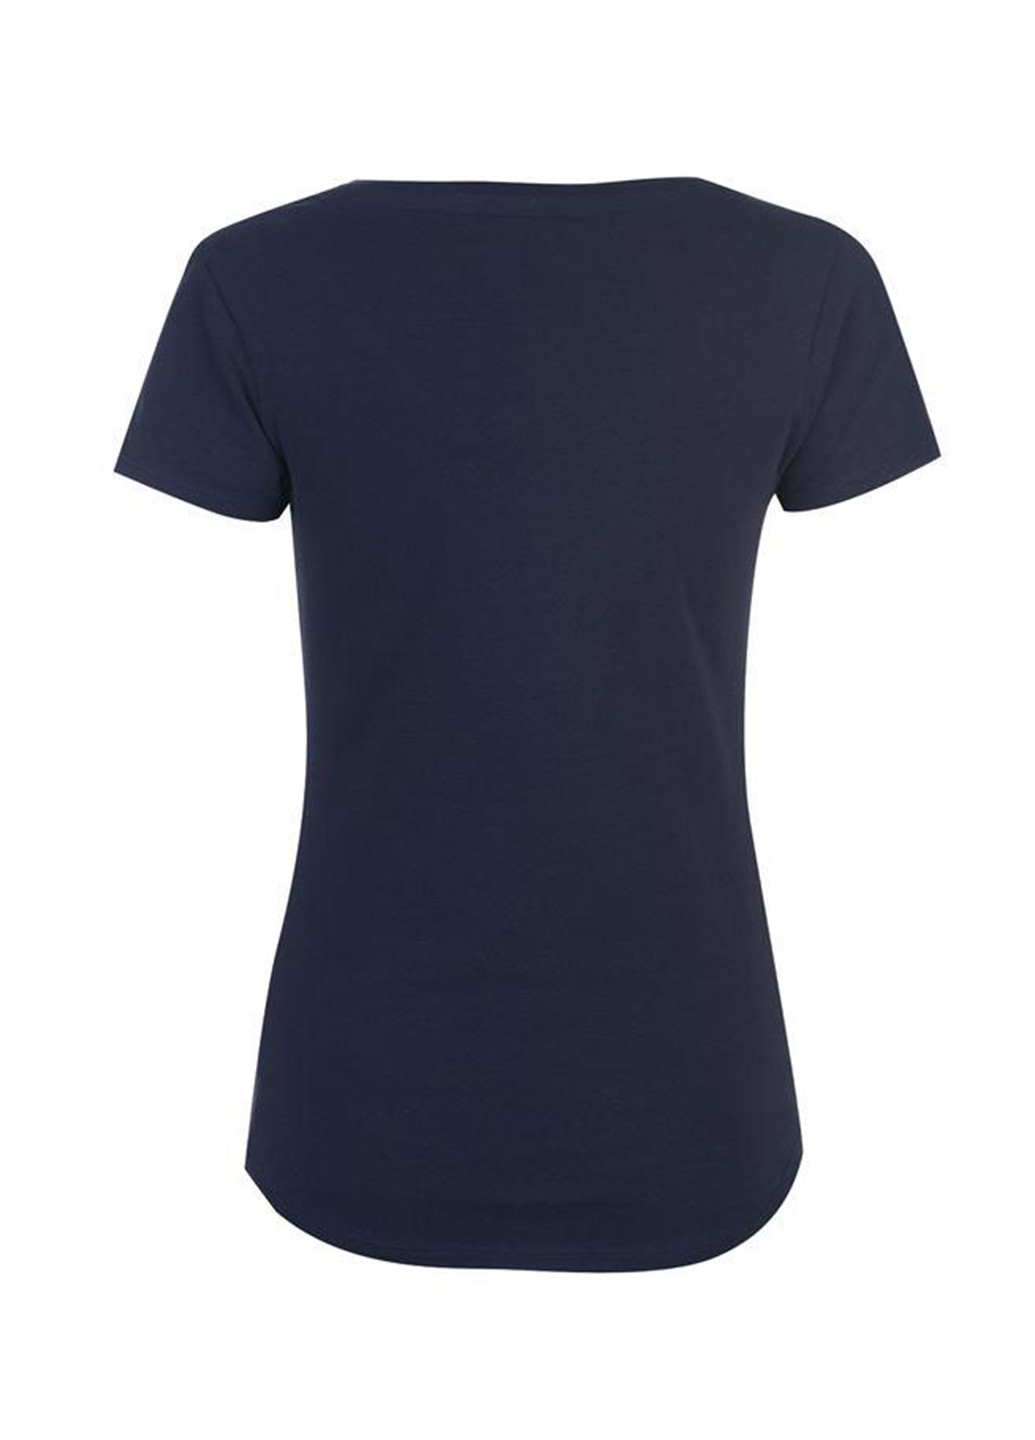 Темно-синя літня футболка Soulcal & Co